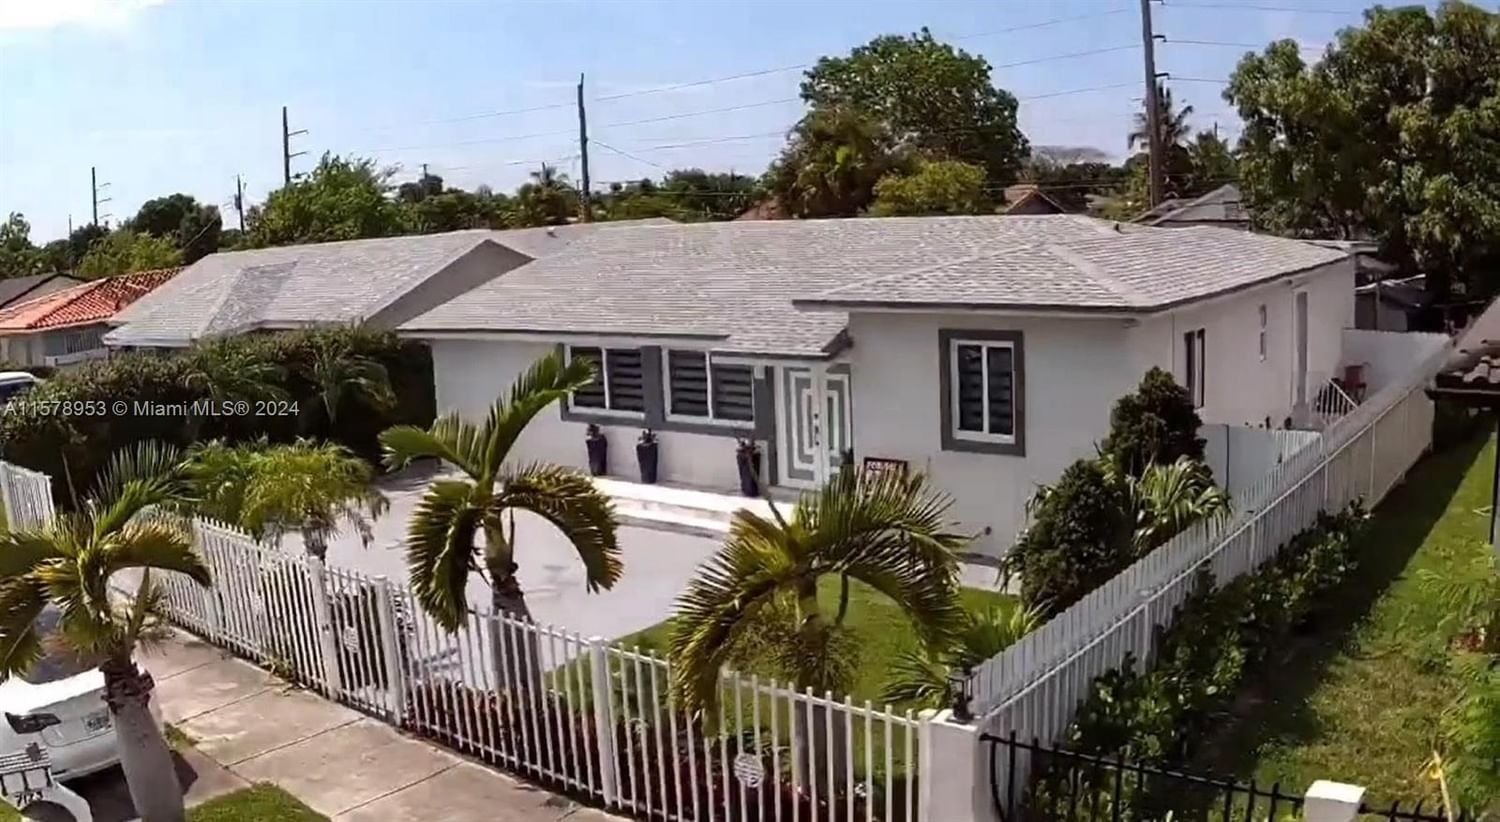 Real estate property located at 7125 13th St, Miami-Dade County, SUGAR TREE GROVE SUB, Miami, FL